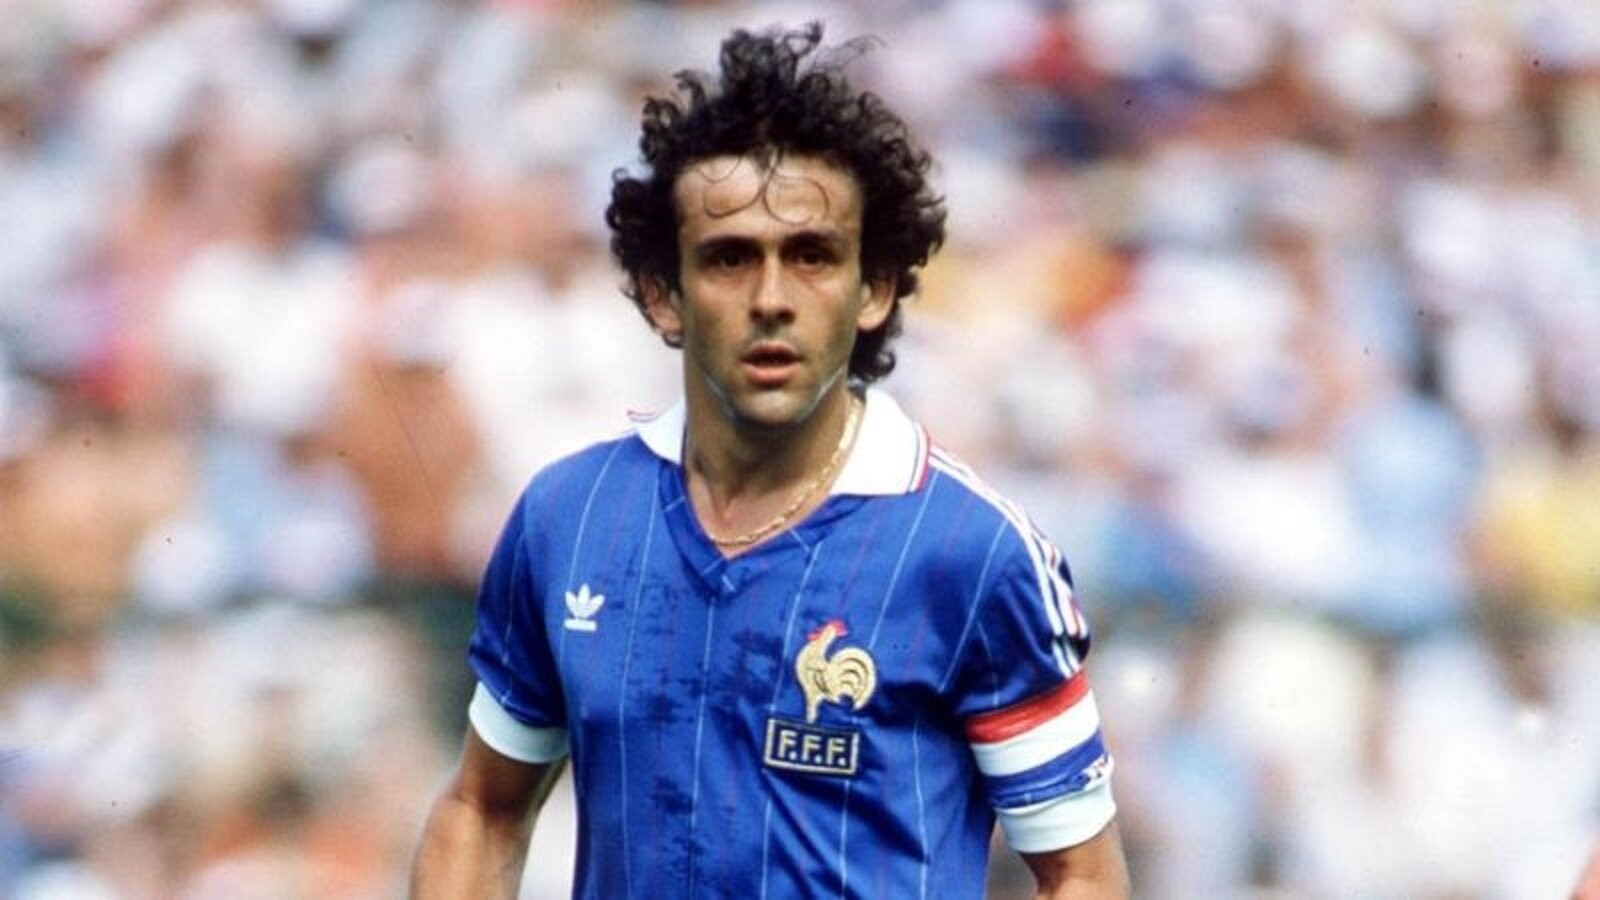 Michel Platini (Pháp) tham dự một kỳ EURO duy nhất và ghi 9 bàn thắng. Đây là kỷ lục chưa từng có cầu thủ nào khác chạm đến. (Ảnh: Getty Images)